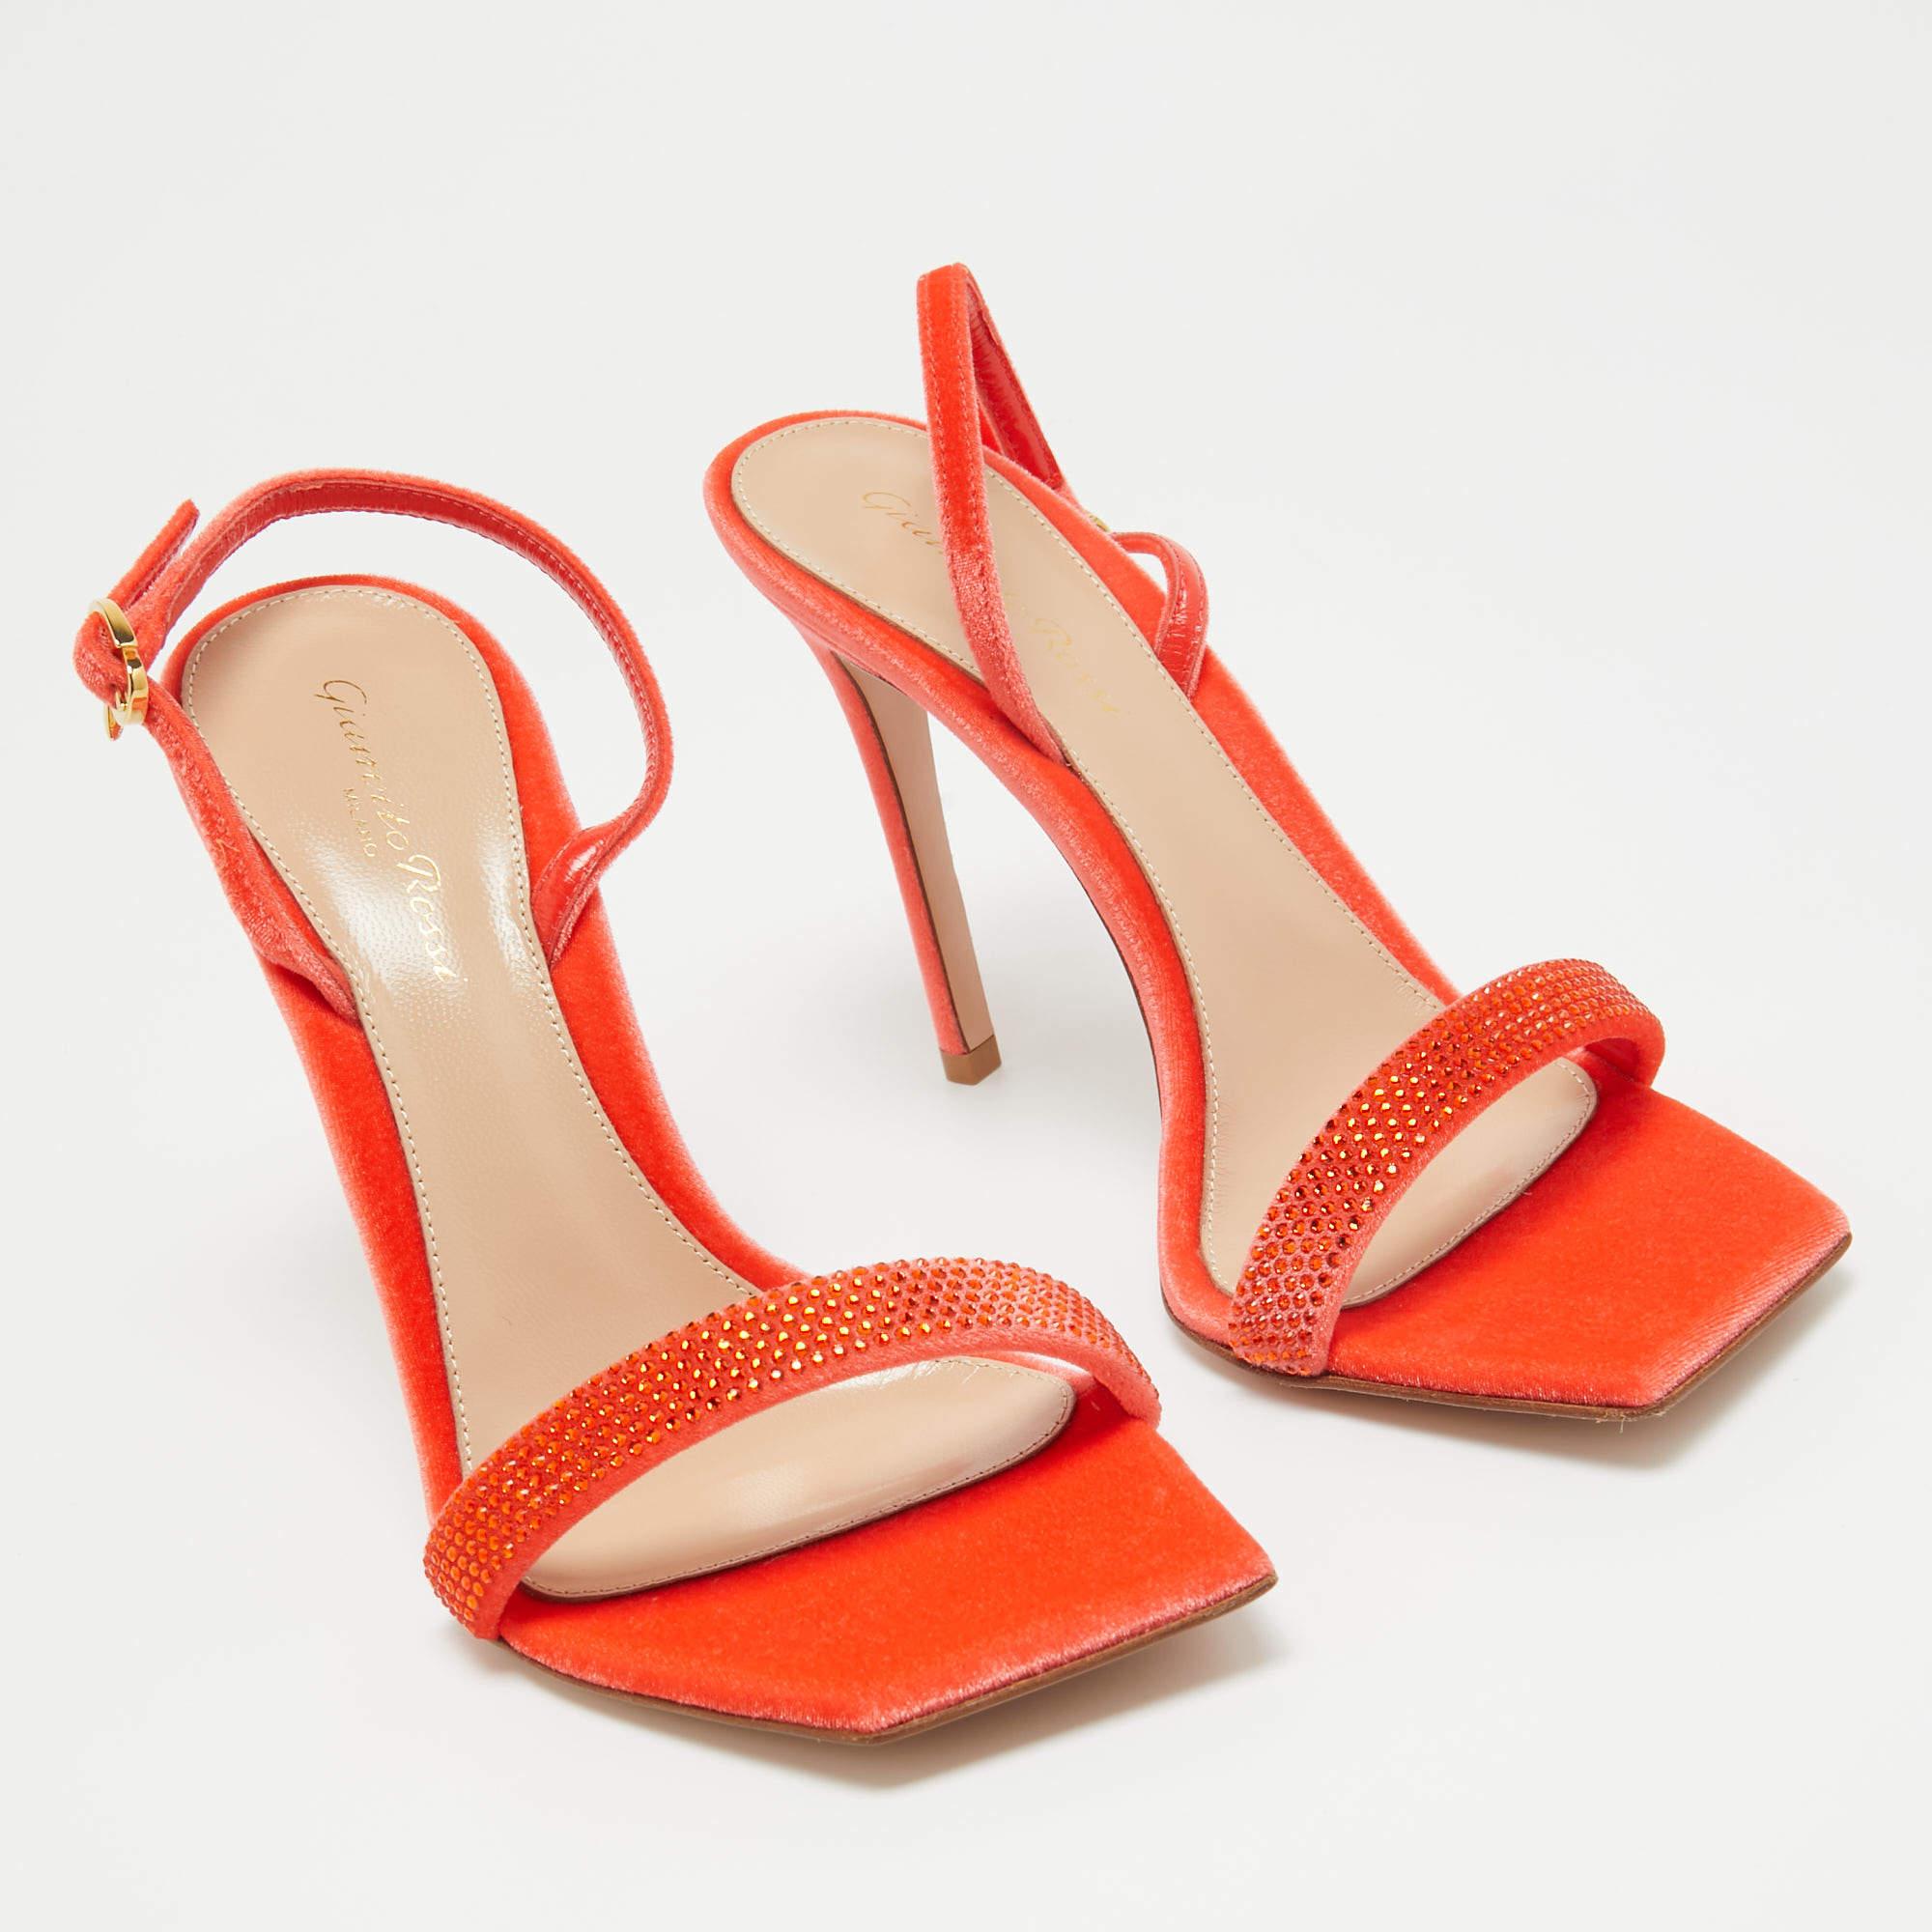 En cuir orange vibrant, les sandales Minas de Gianvito Rossi exsudent un charme confiant. De délicates brides enveloppent gracieusement le pied, tandis qu'un talon robuste assure stabilité et style. Avec un savoir-faire impeccable et un design